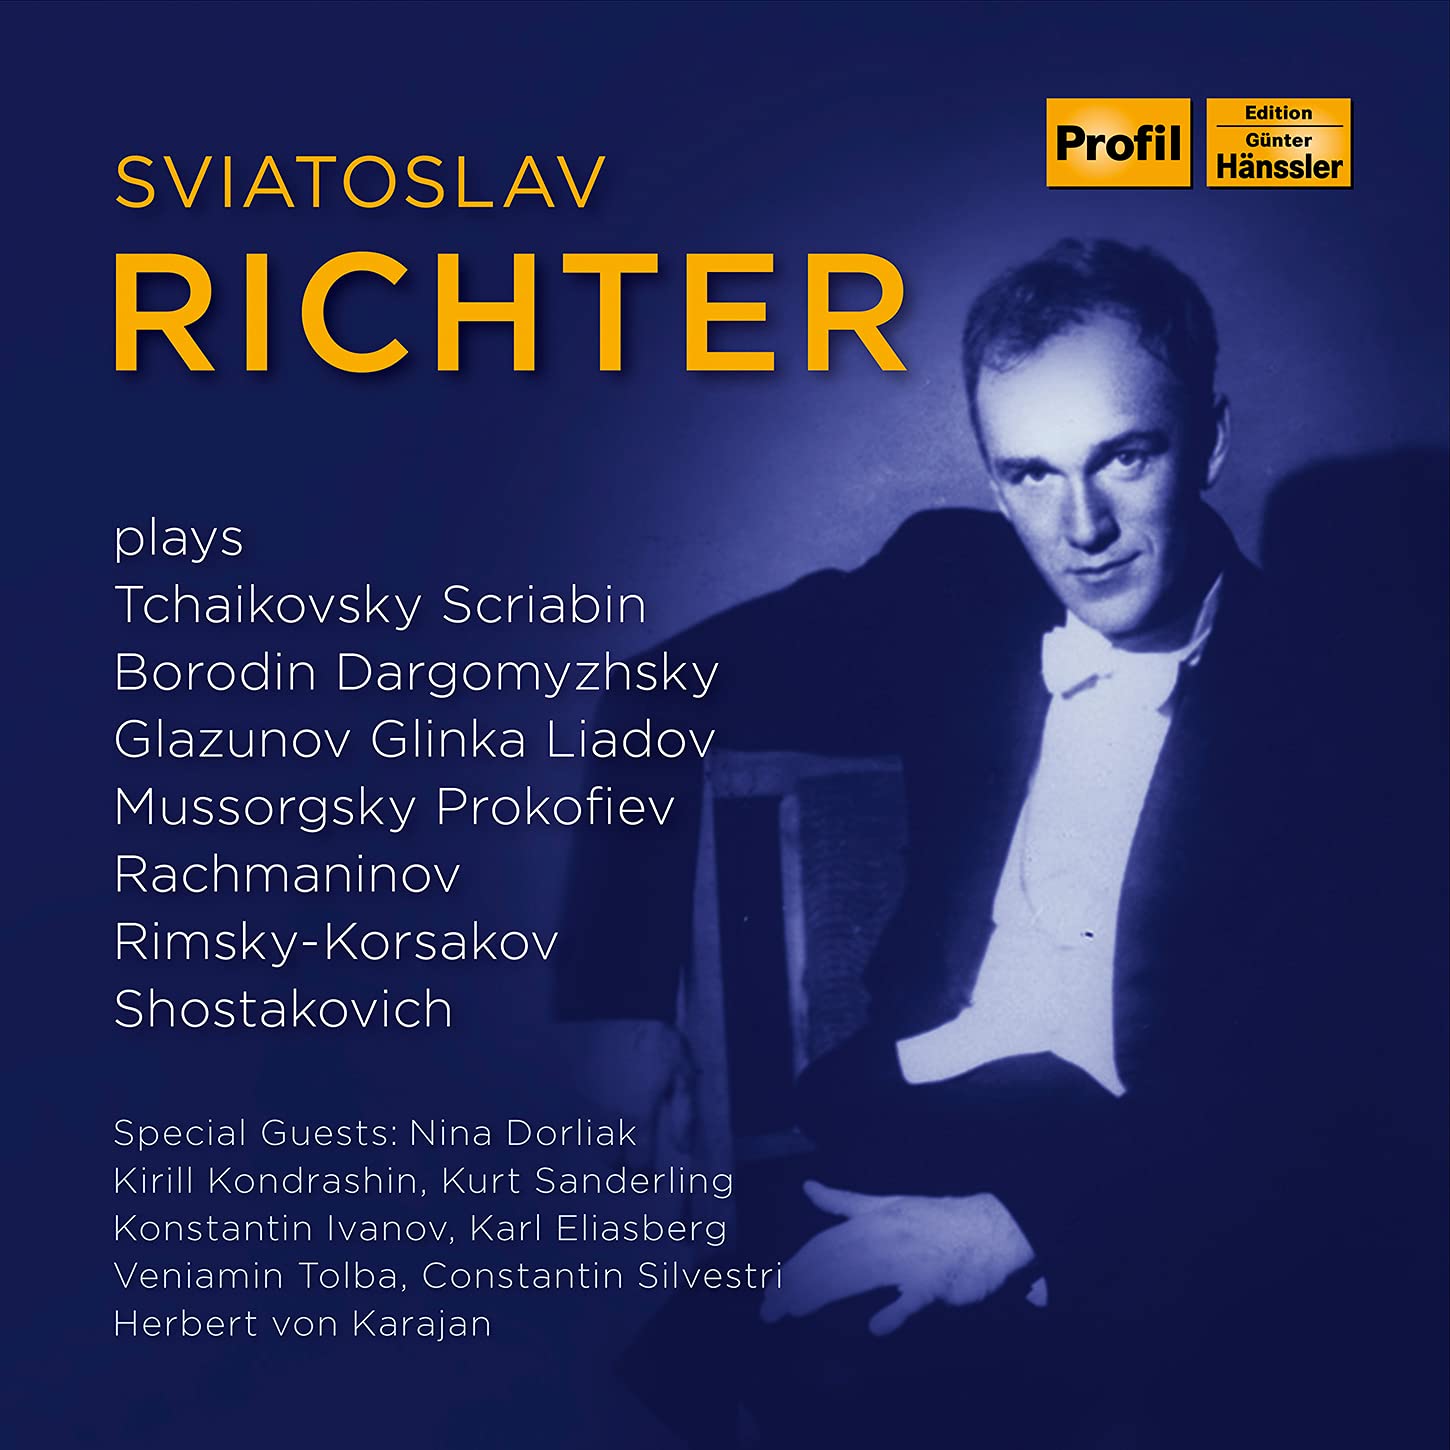 Audio Cd Sviatoslav Richter: Plays Russian Composers (13 Cd) NUOVO SIGILLATO, EDIZIONE DEL 02/07/2021 SUBITO DISPONIBILE